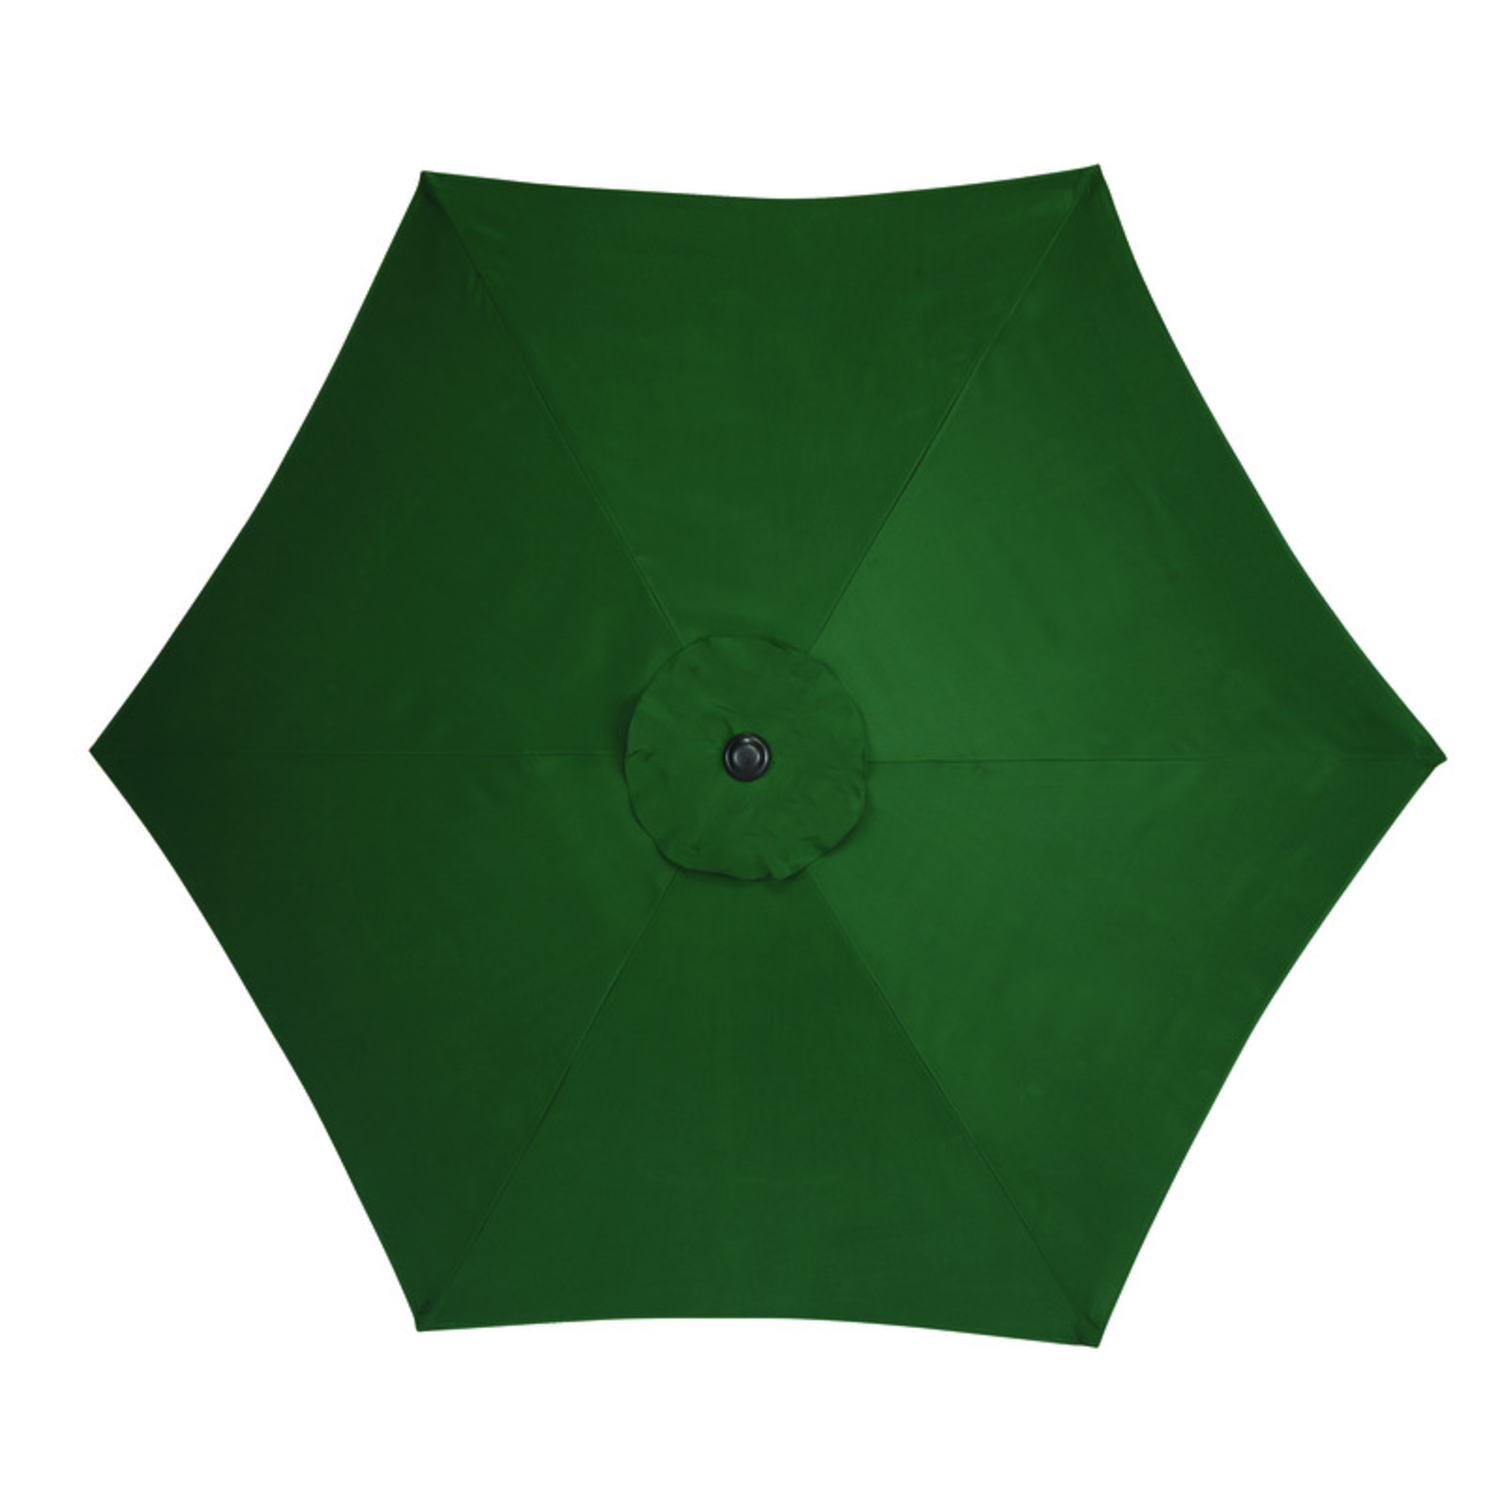 Living Accents 9 ft. Tiltable Green Market Umbrella